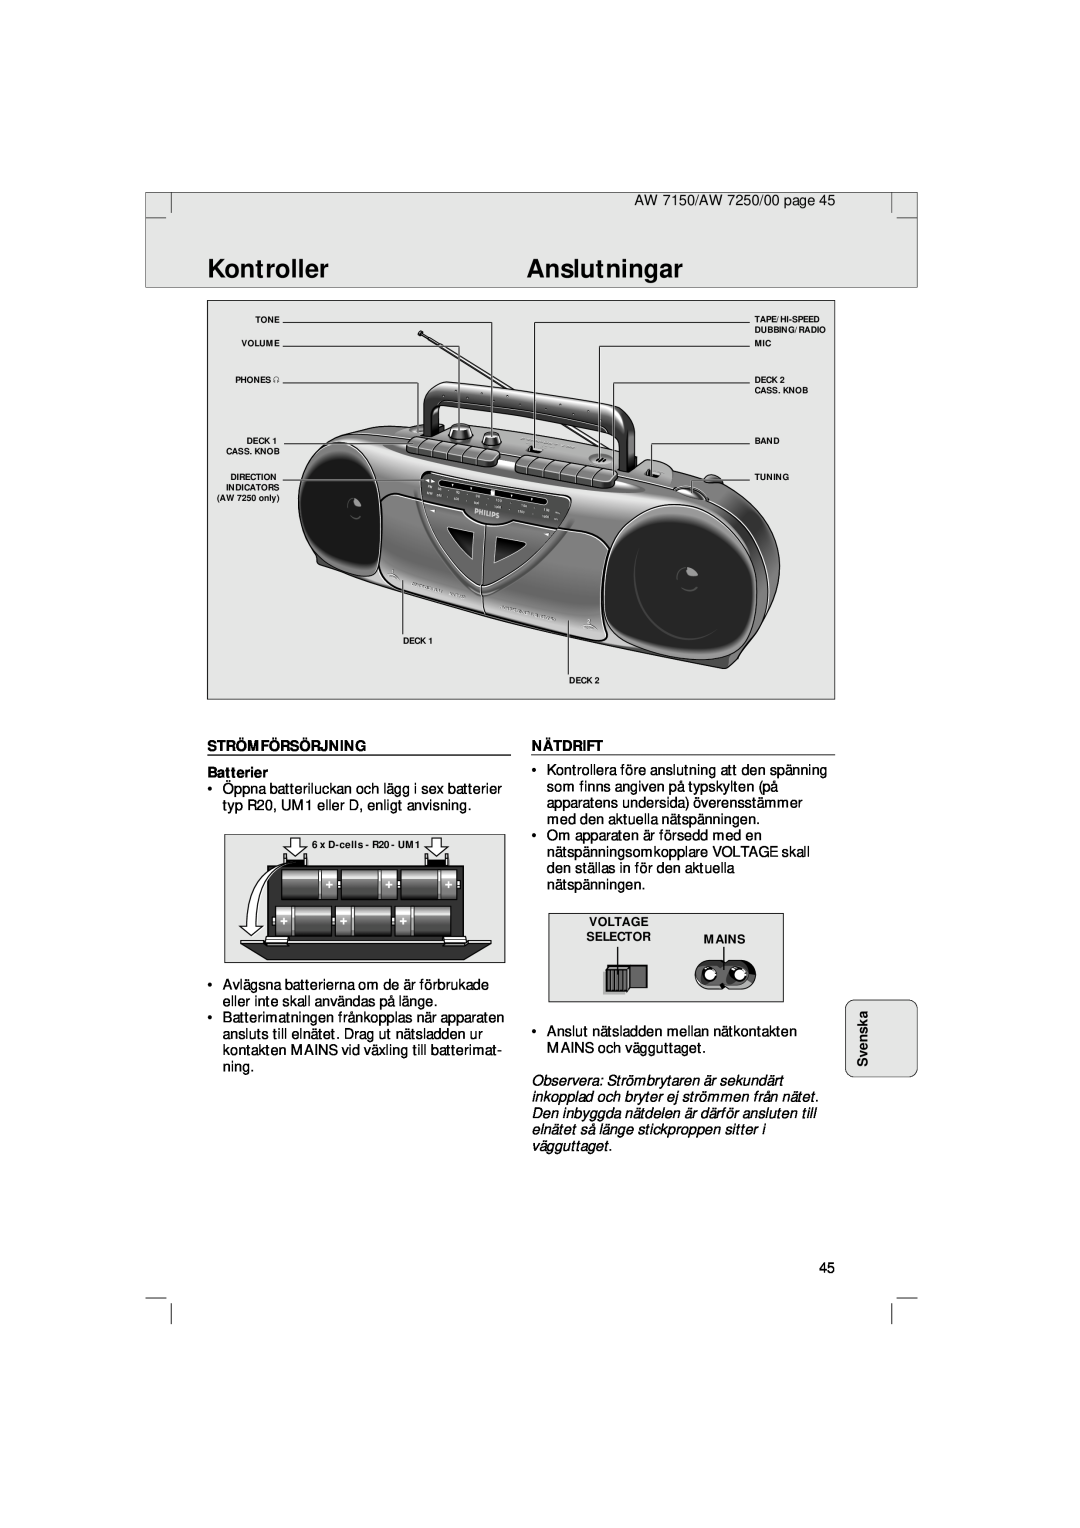 Philips AW 7250/04S, AW 7150/04S manual KontrollerAnslutningar, Svenska, STRÖMFÖRSÖRJNING Batterier, Nätdrift 